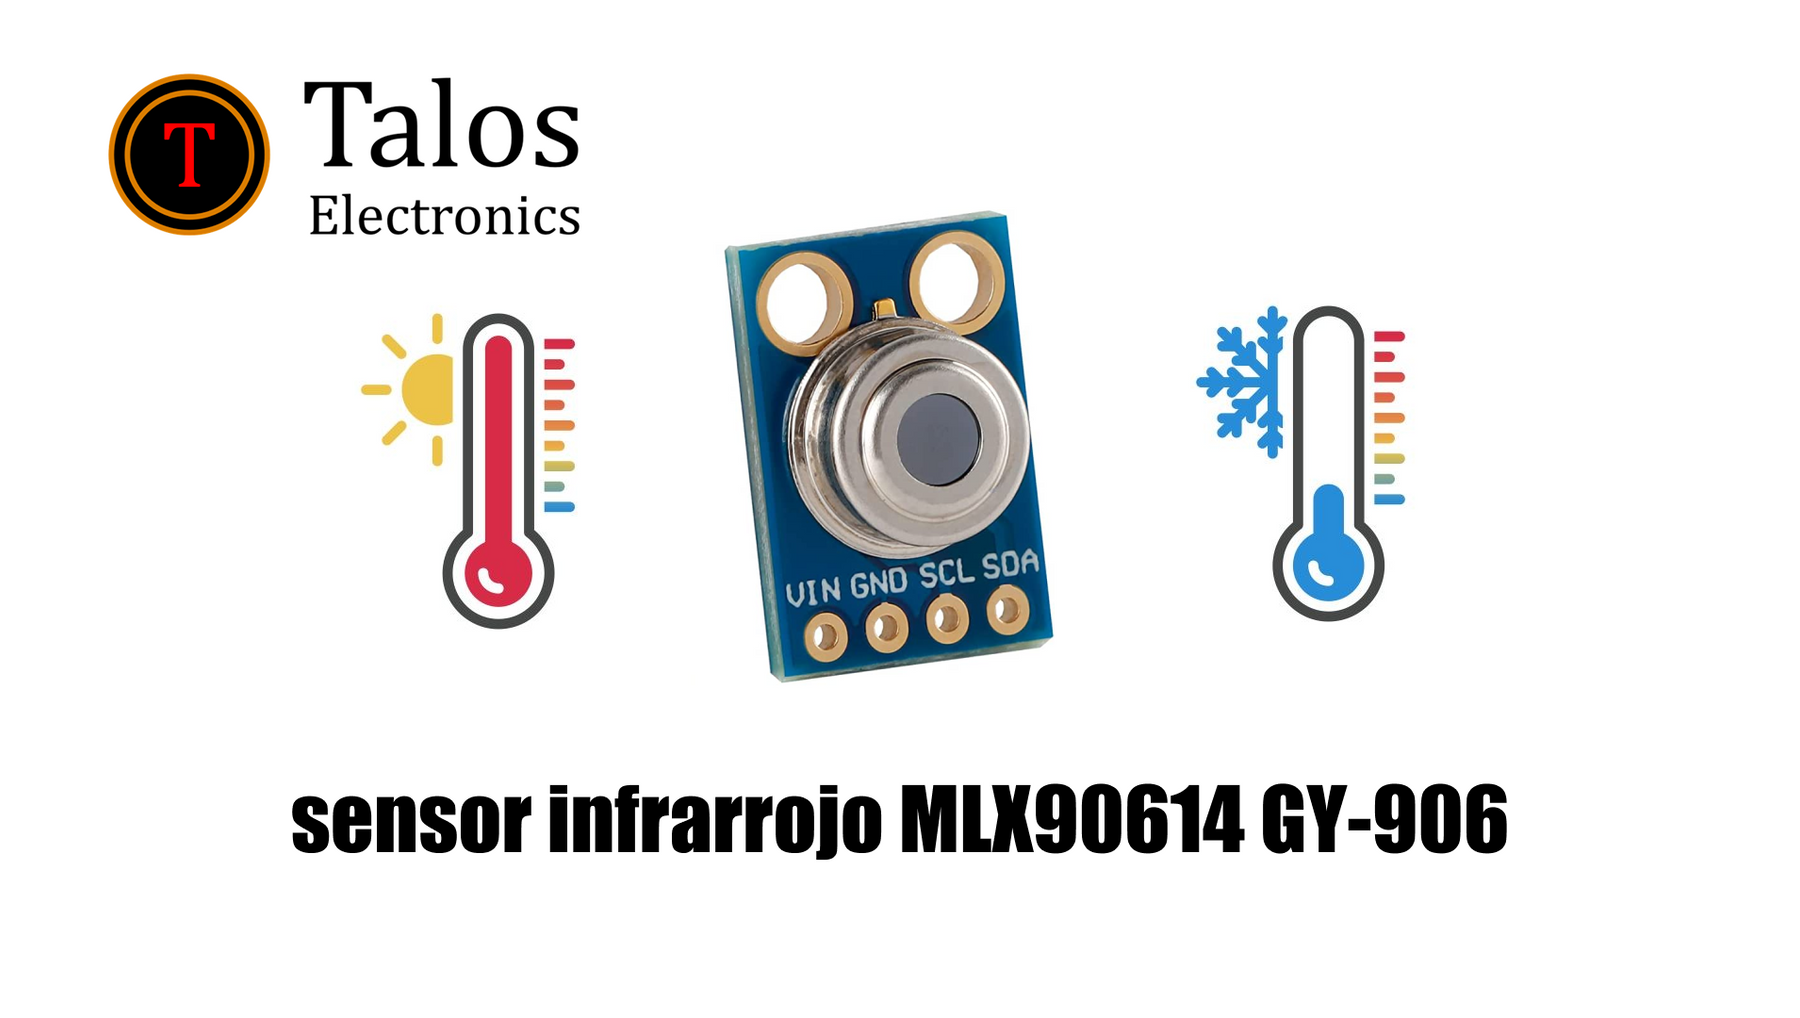 Cómo utilizar el módulo sensor infrarrojo MLX90614 GY-906 para medir la temperatura sin contacto físico